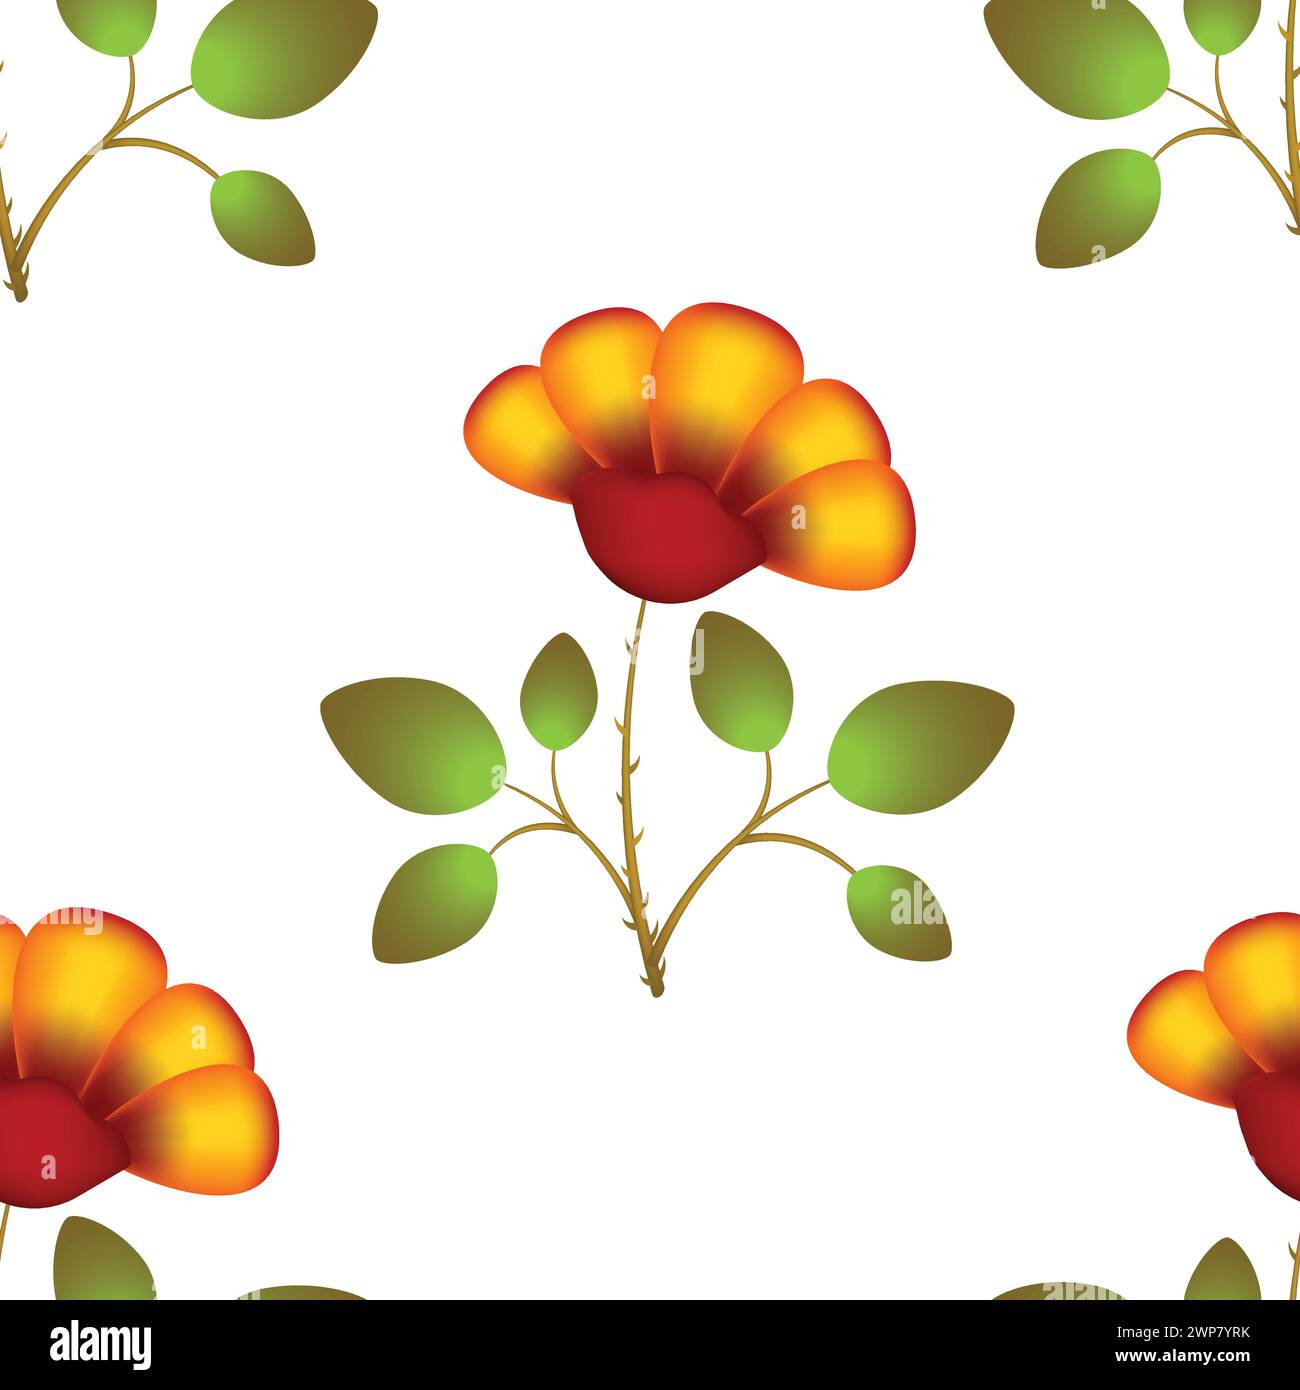 Nahtloses Blumenmuster. Muster mit einer schönen Blume. Muster zum Bedrucken von Textilien, Papier usw. Große orangefarbene Blüte in Farbverläufen Stock Vektor